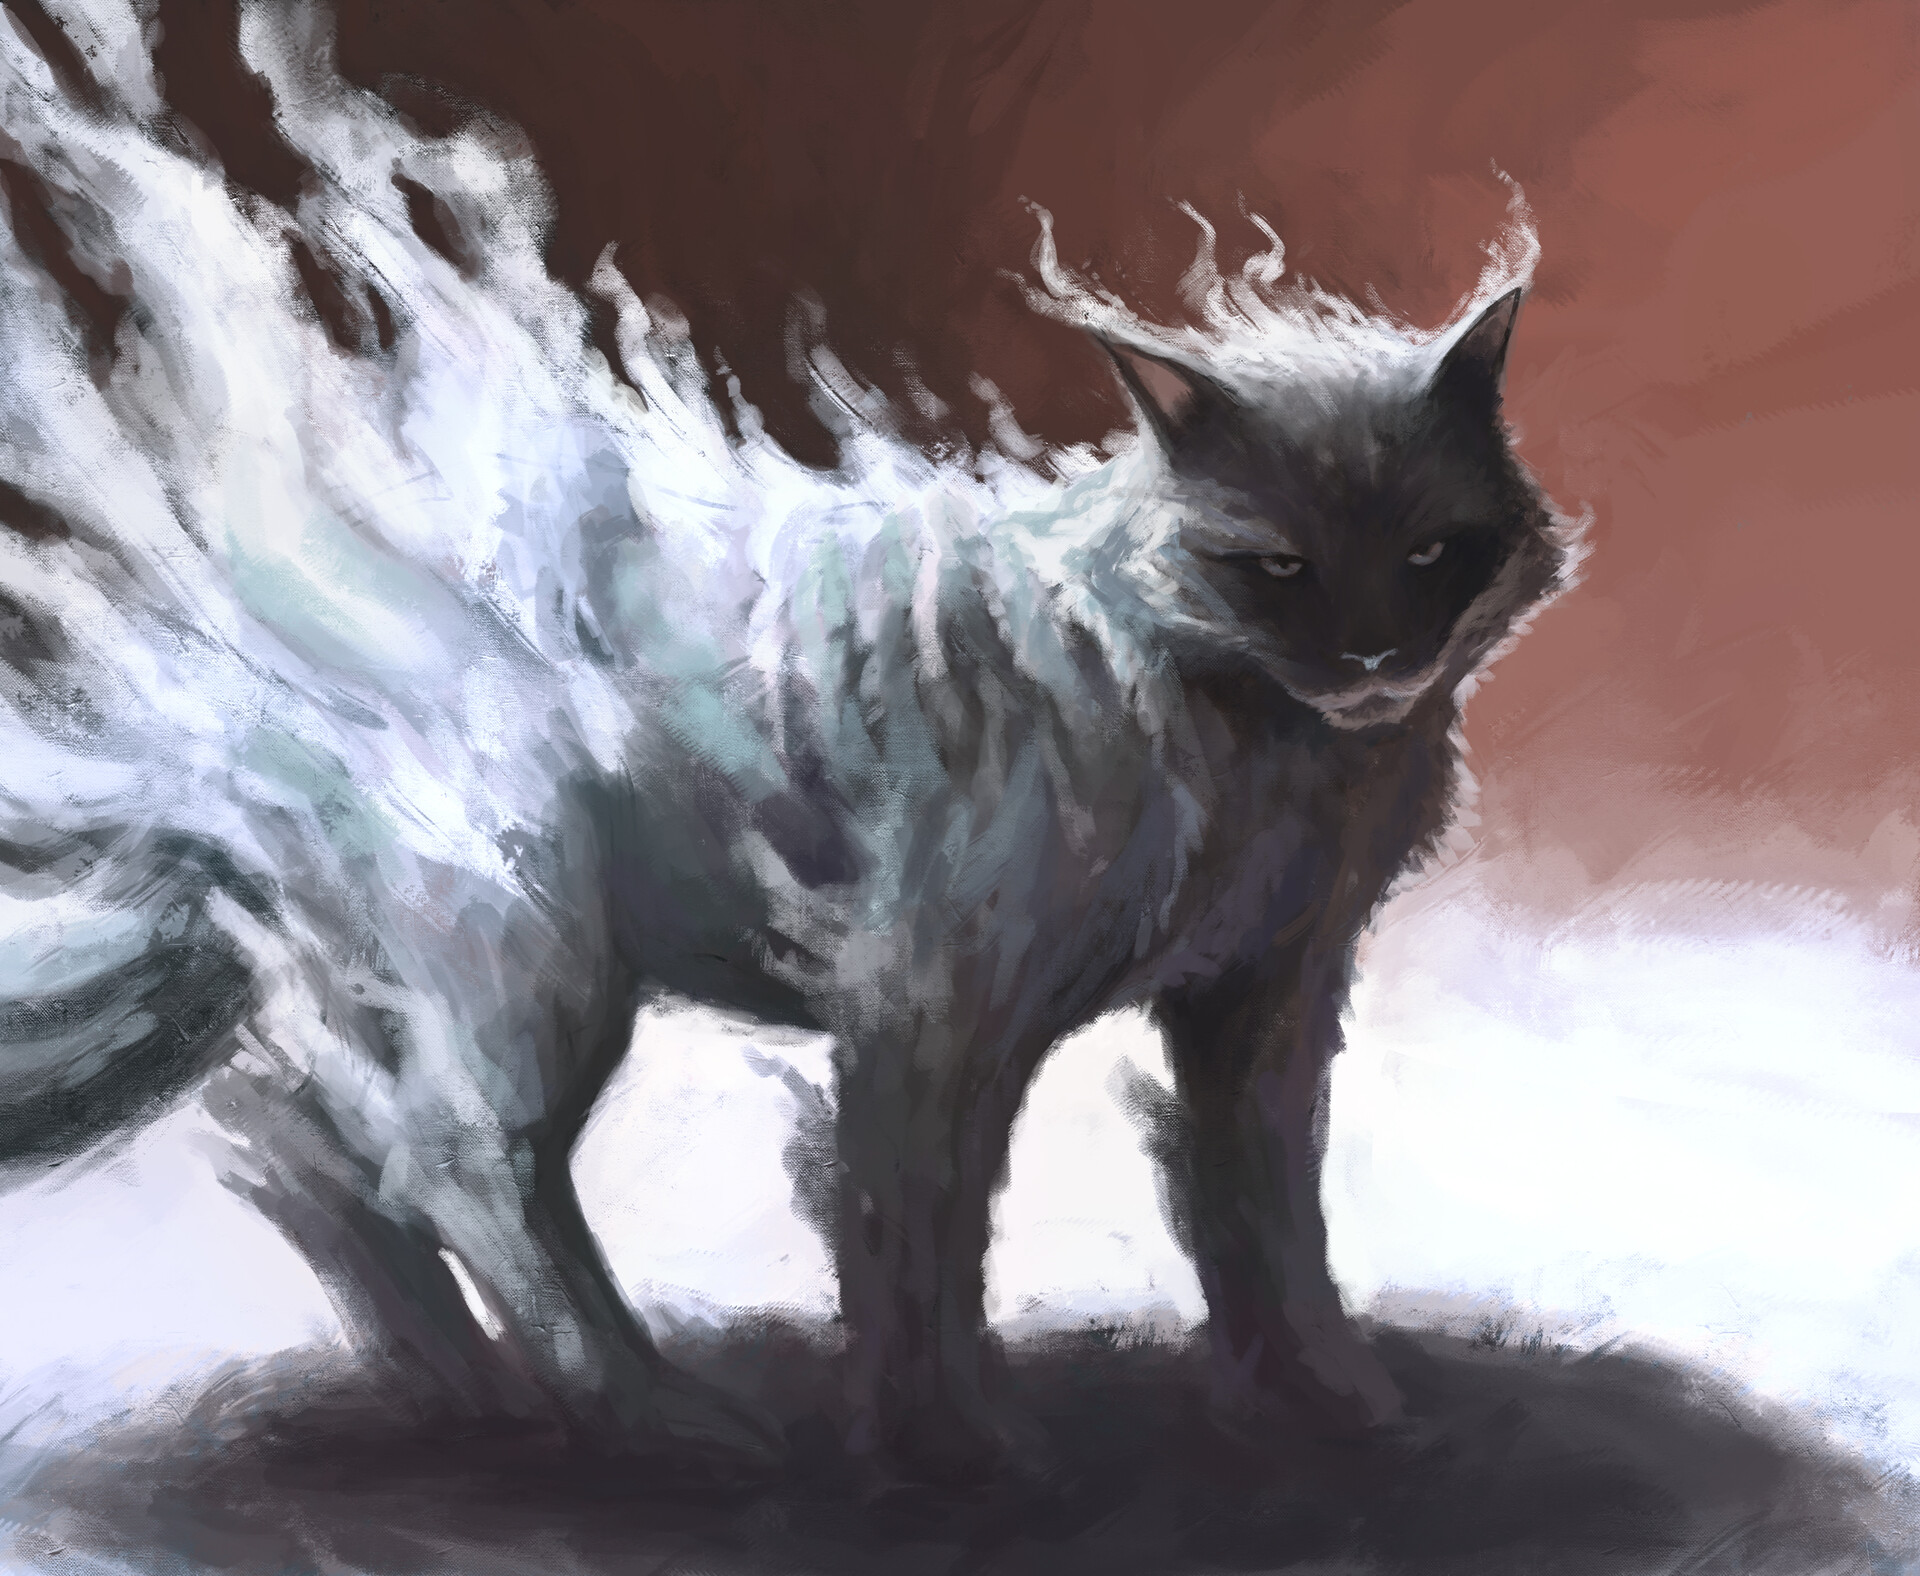 Ghost Cat